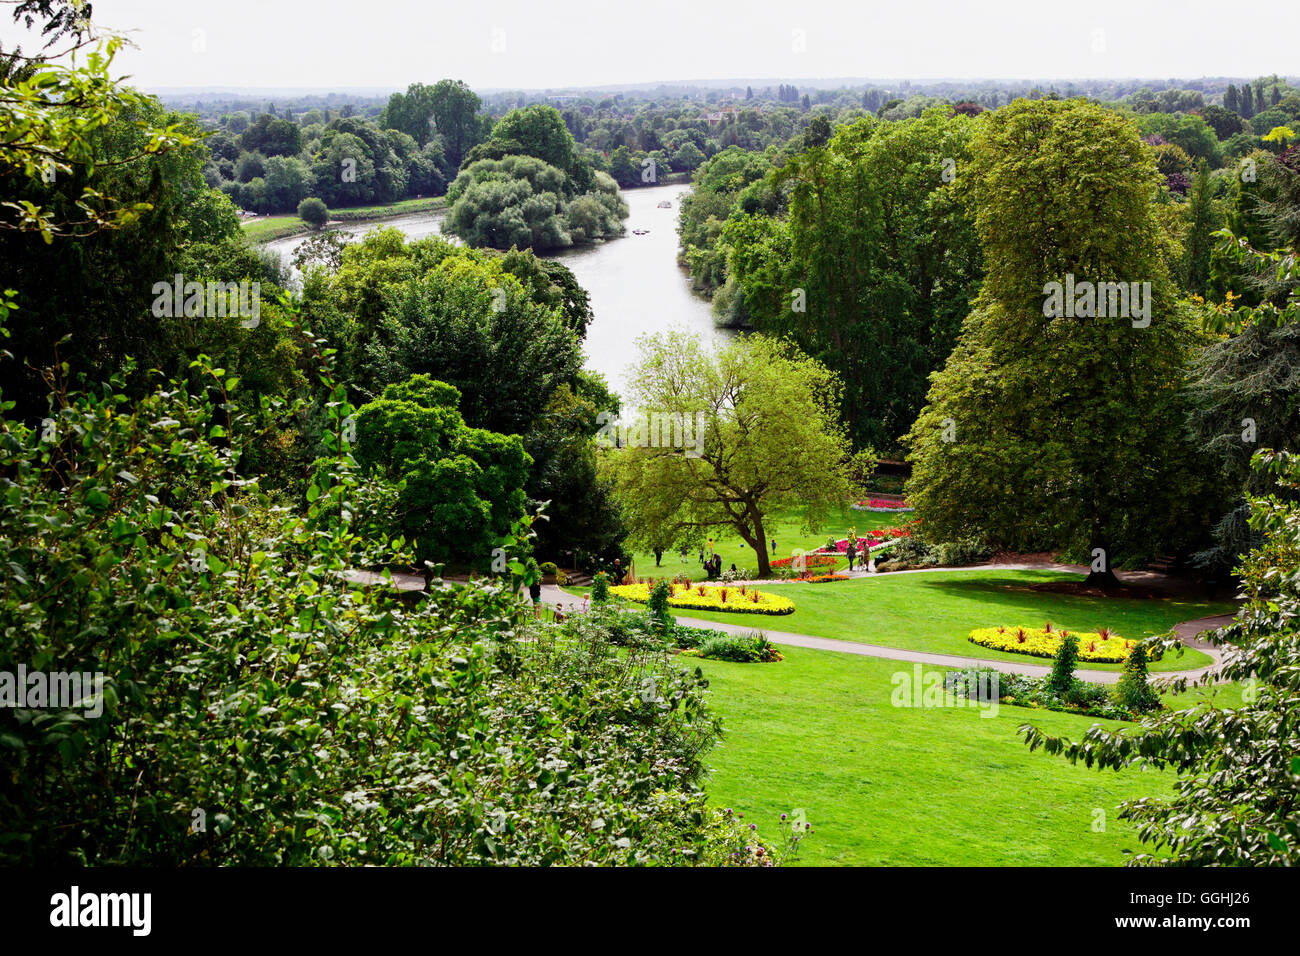 Vue de jardins en terrasse sur la rivière Thames et de Glover's Island, Richmond upon Thames, Surrey, Angleterre, Royaume-Uni Banque D'Images